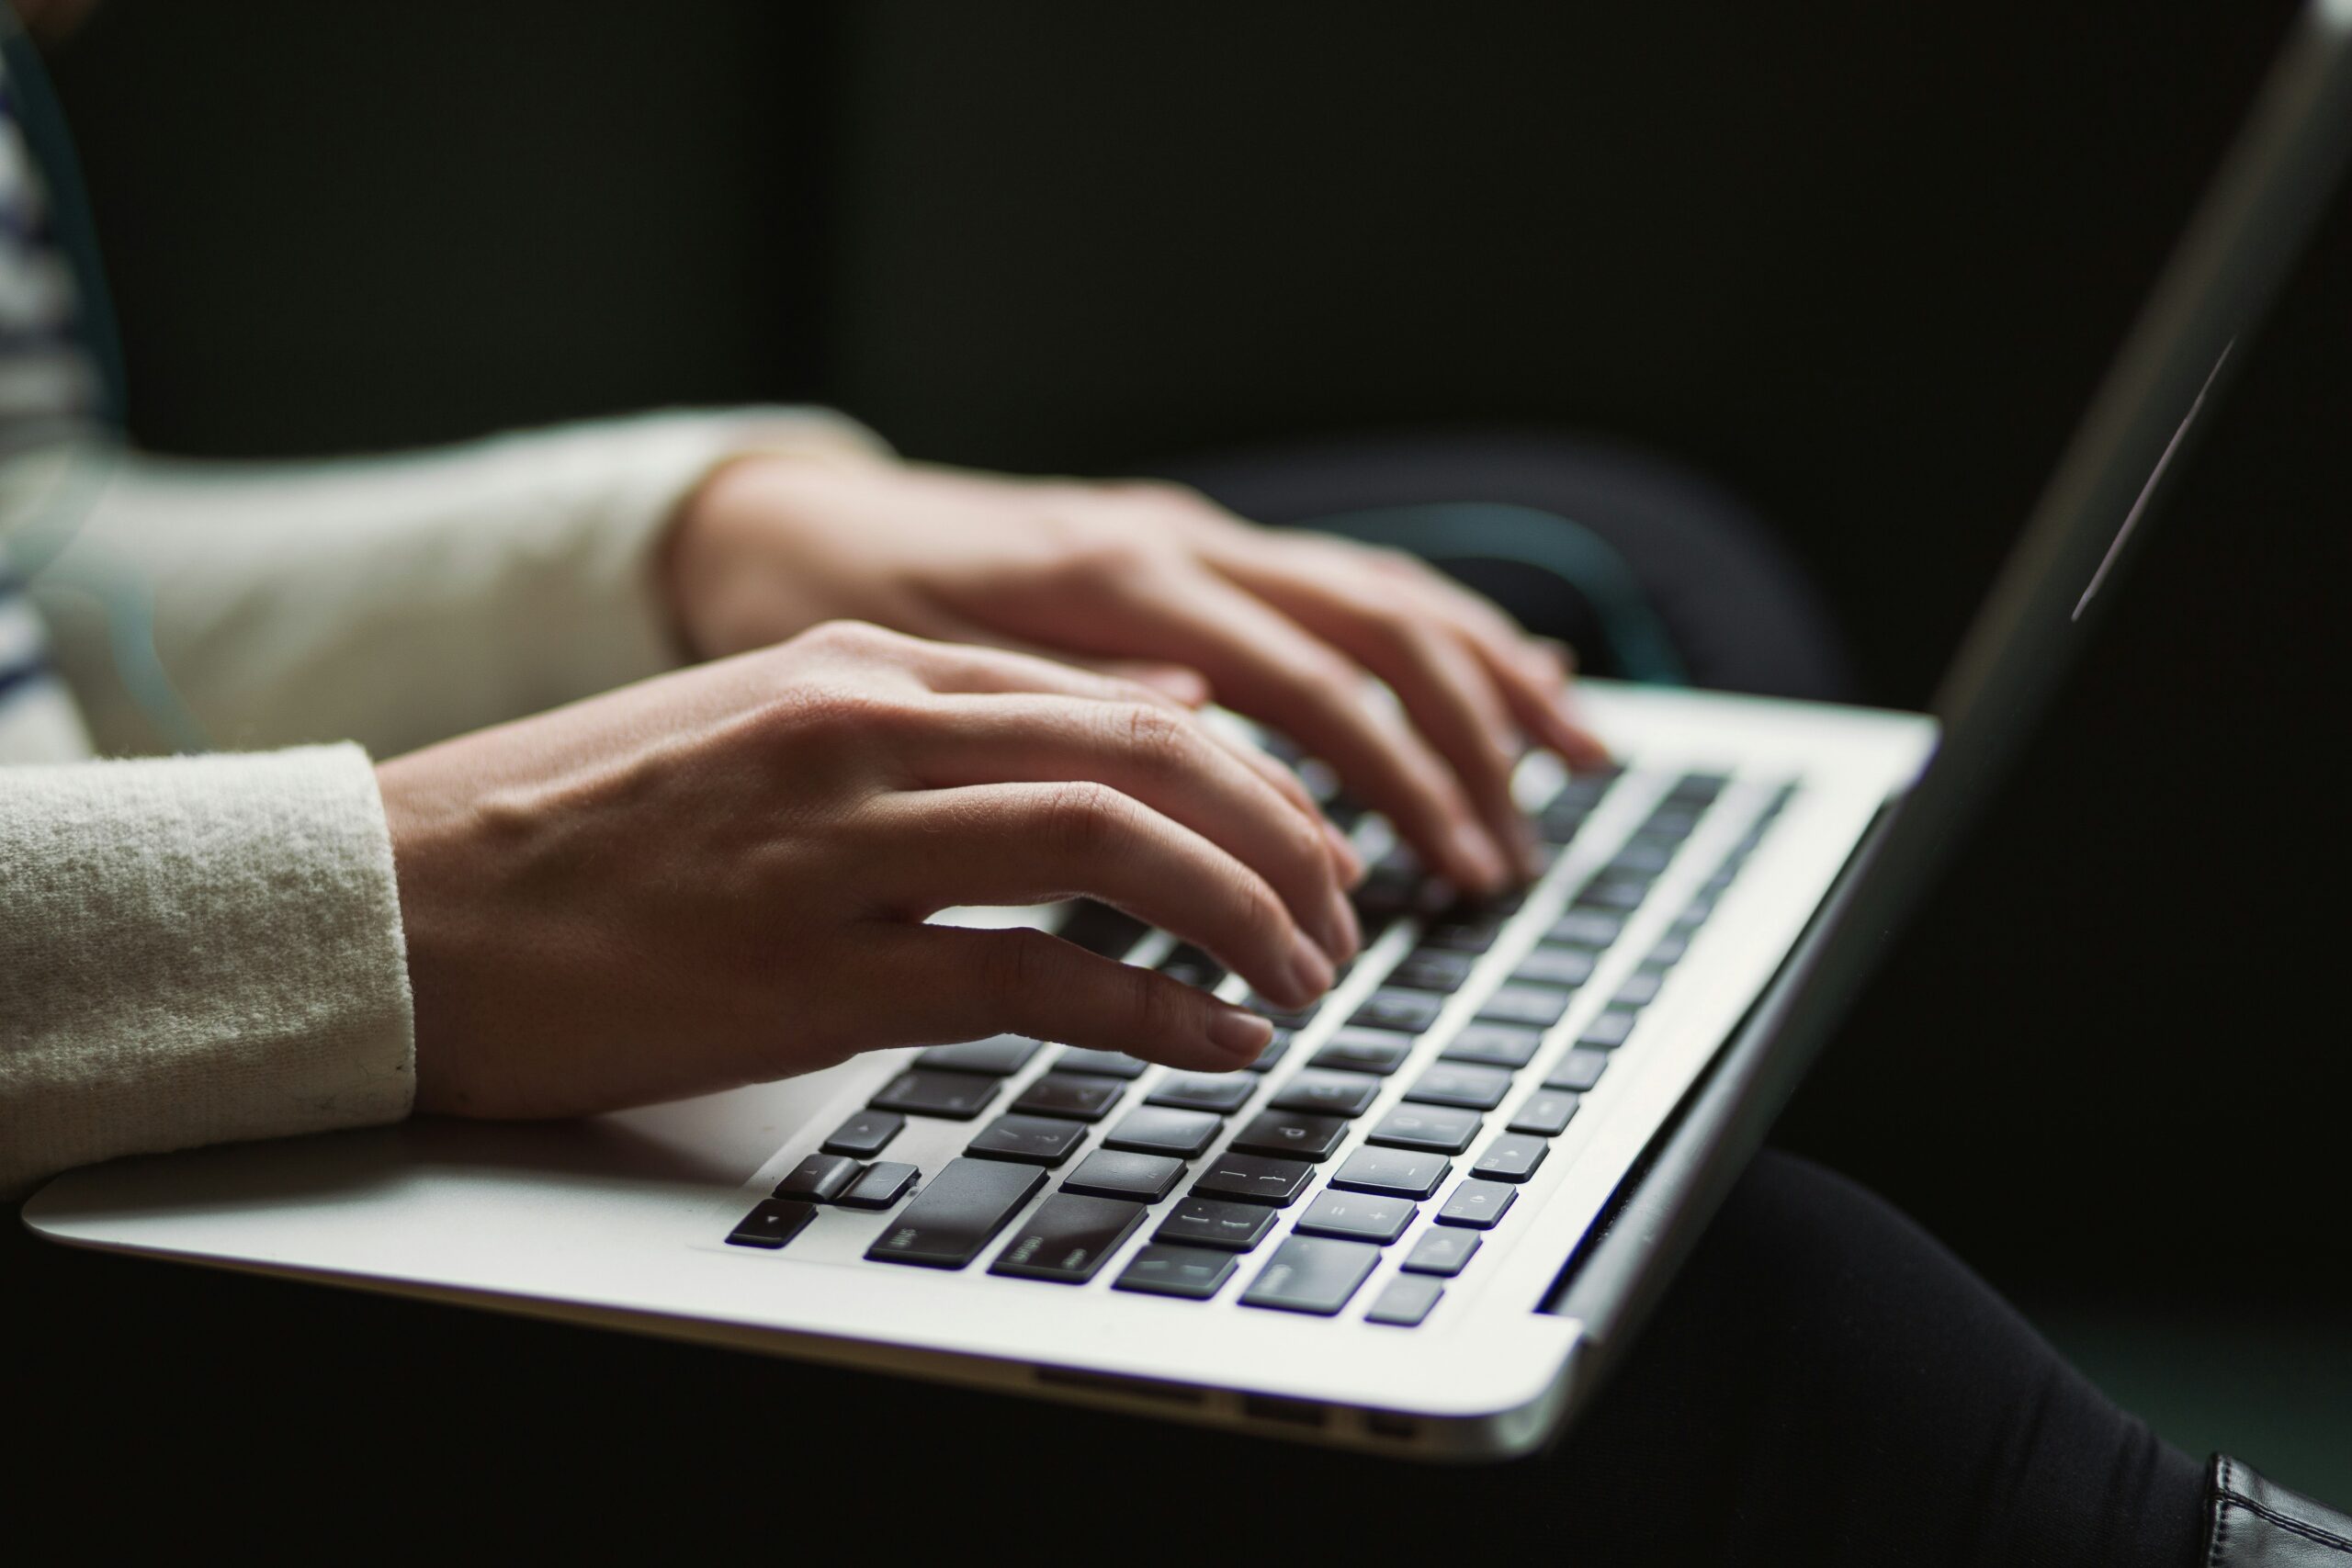 Bildet viser et menneske som sitter ved en laptop og skriver. Det er kun hendene til vedkommende og tastaturet og nederste del av skjermen som er synlig.